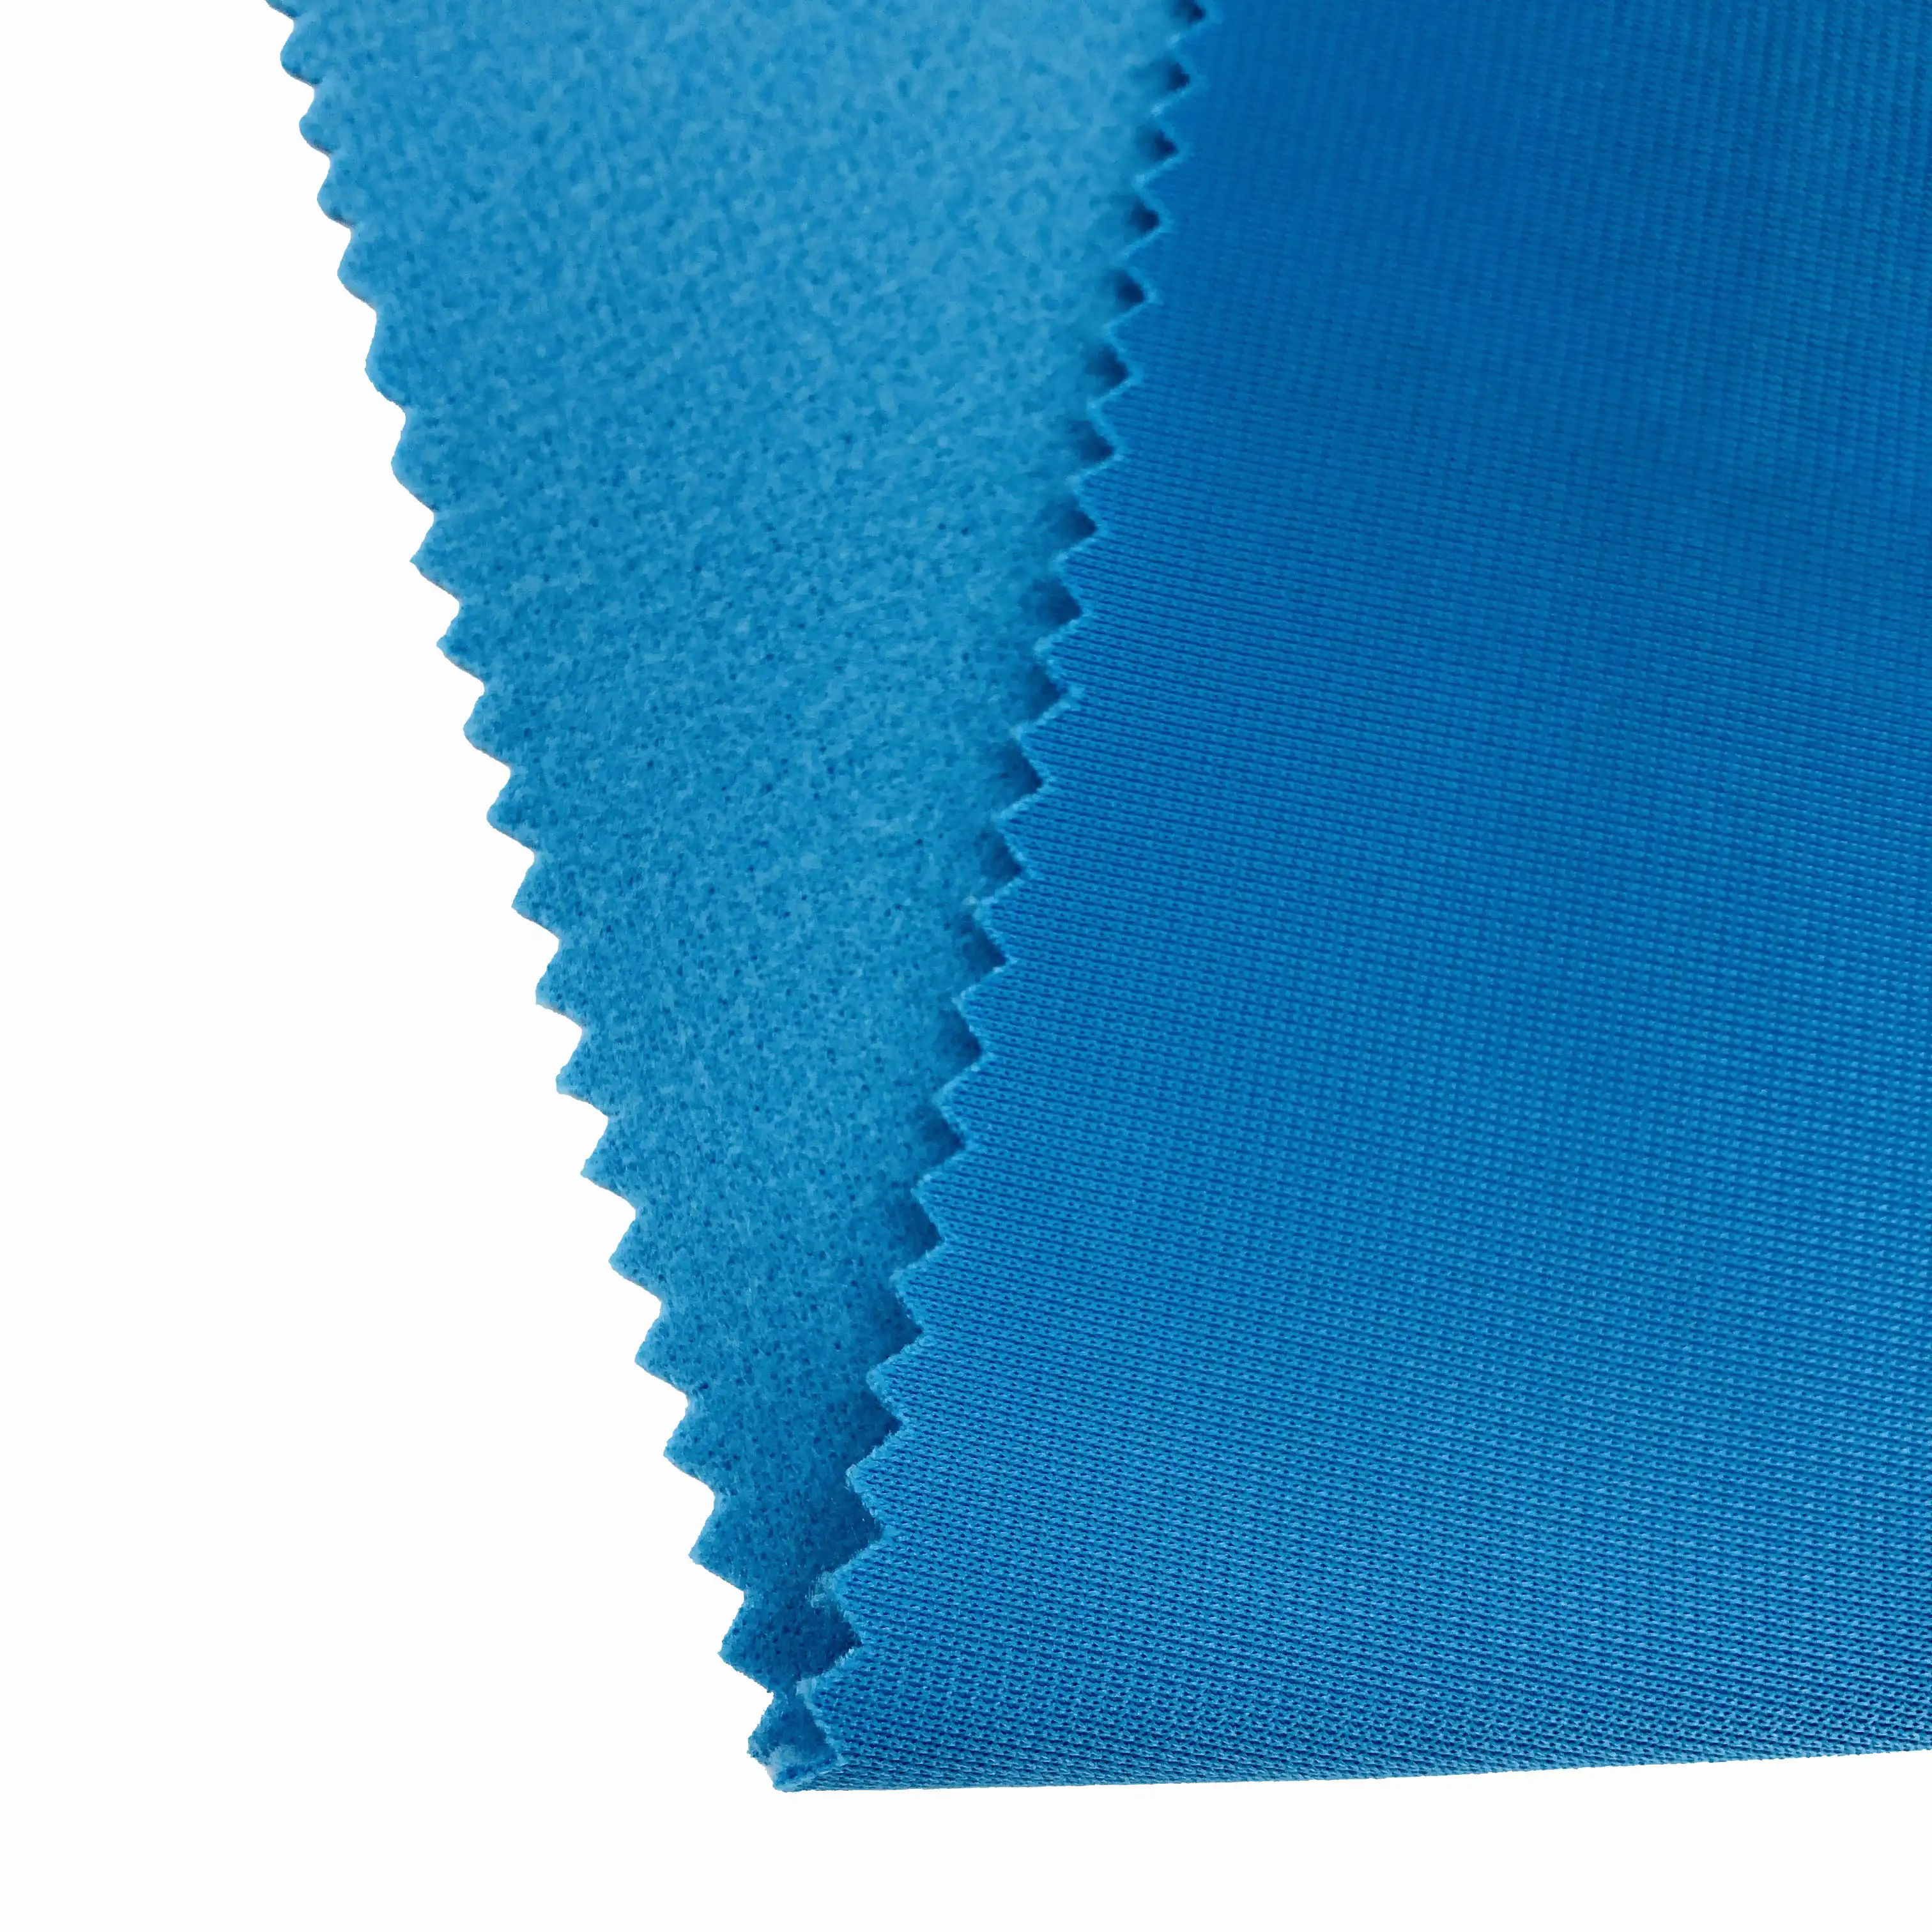 Tissu personnalisé 100% polyester, étoffe en viscose/polyester, double maille côtelée, tricot brossé, lot de 50 pièces